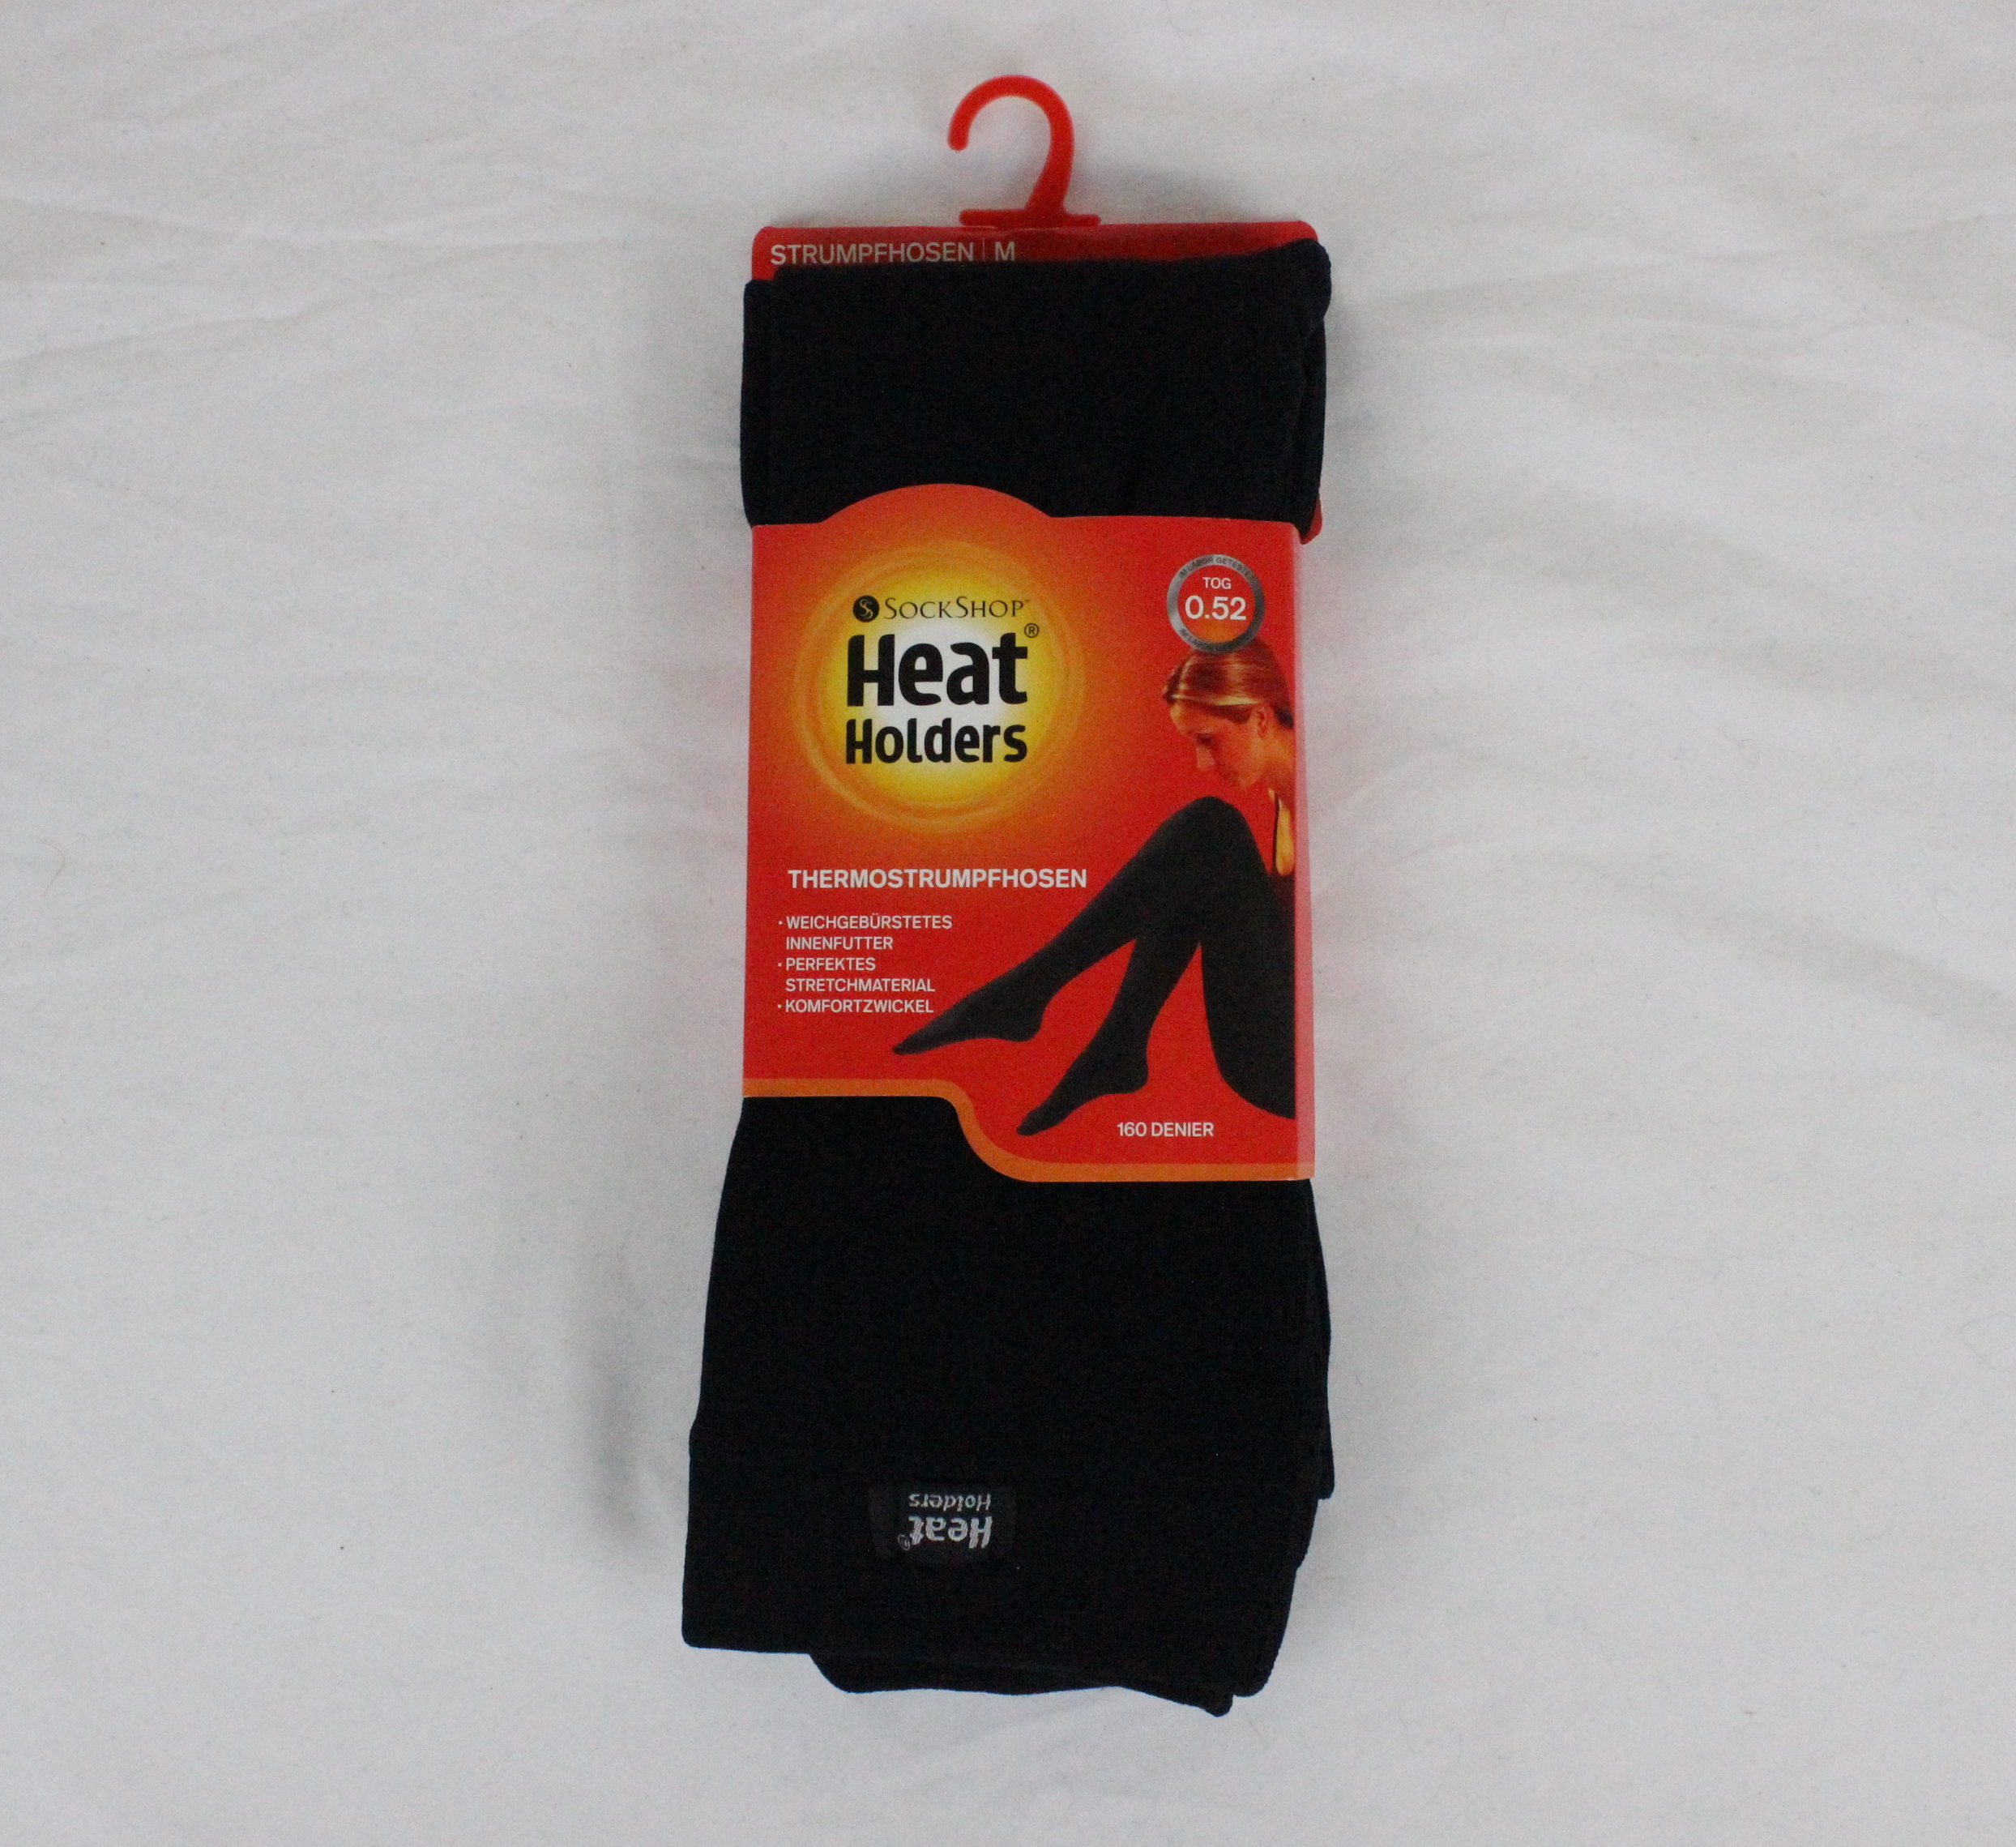 HEAT HOLDERS Thermal Footless Tights (Leggings) -Women